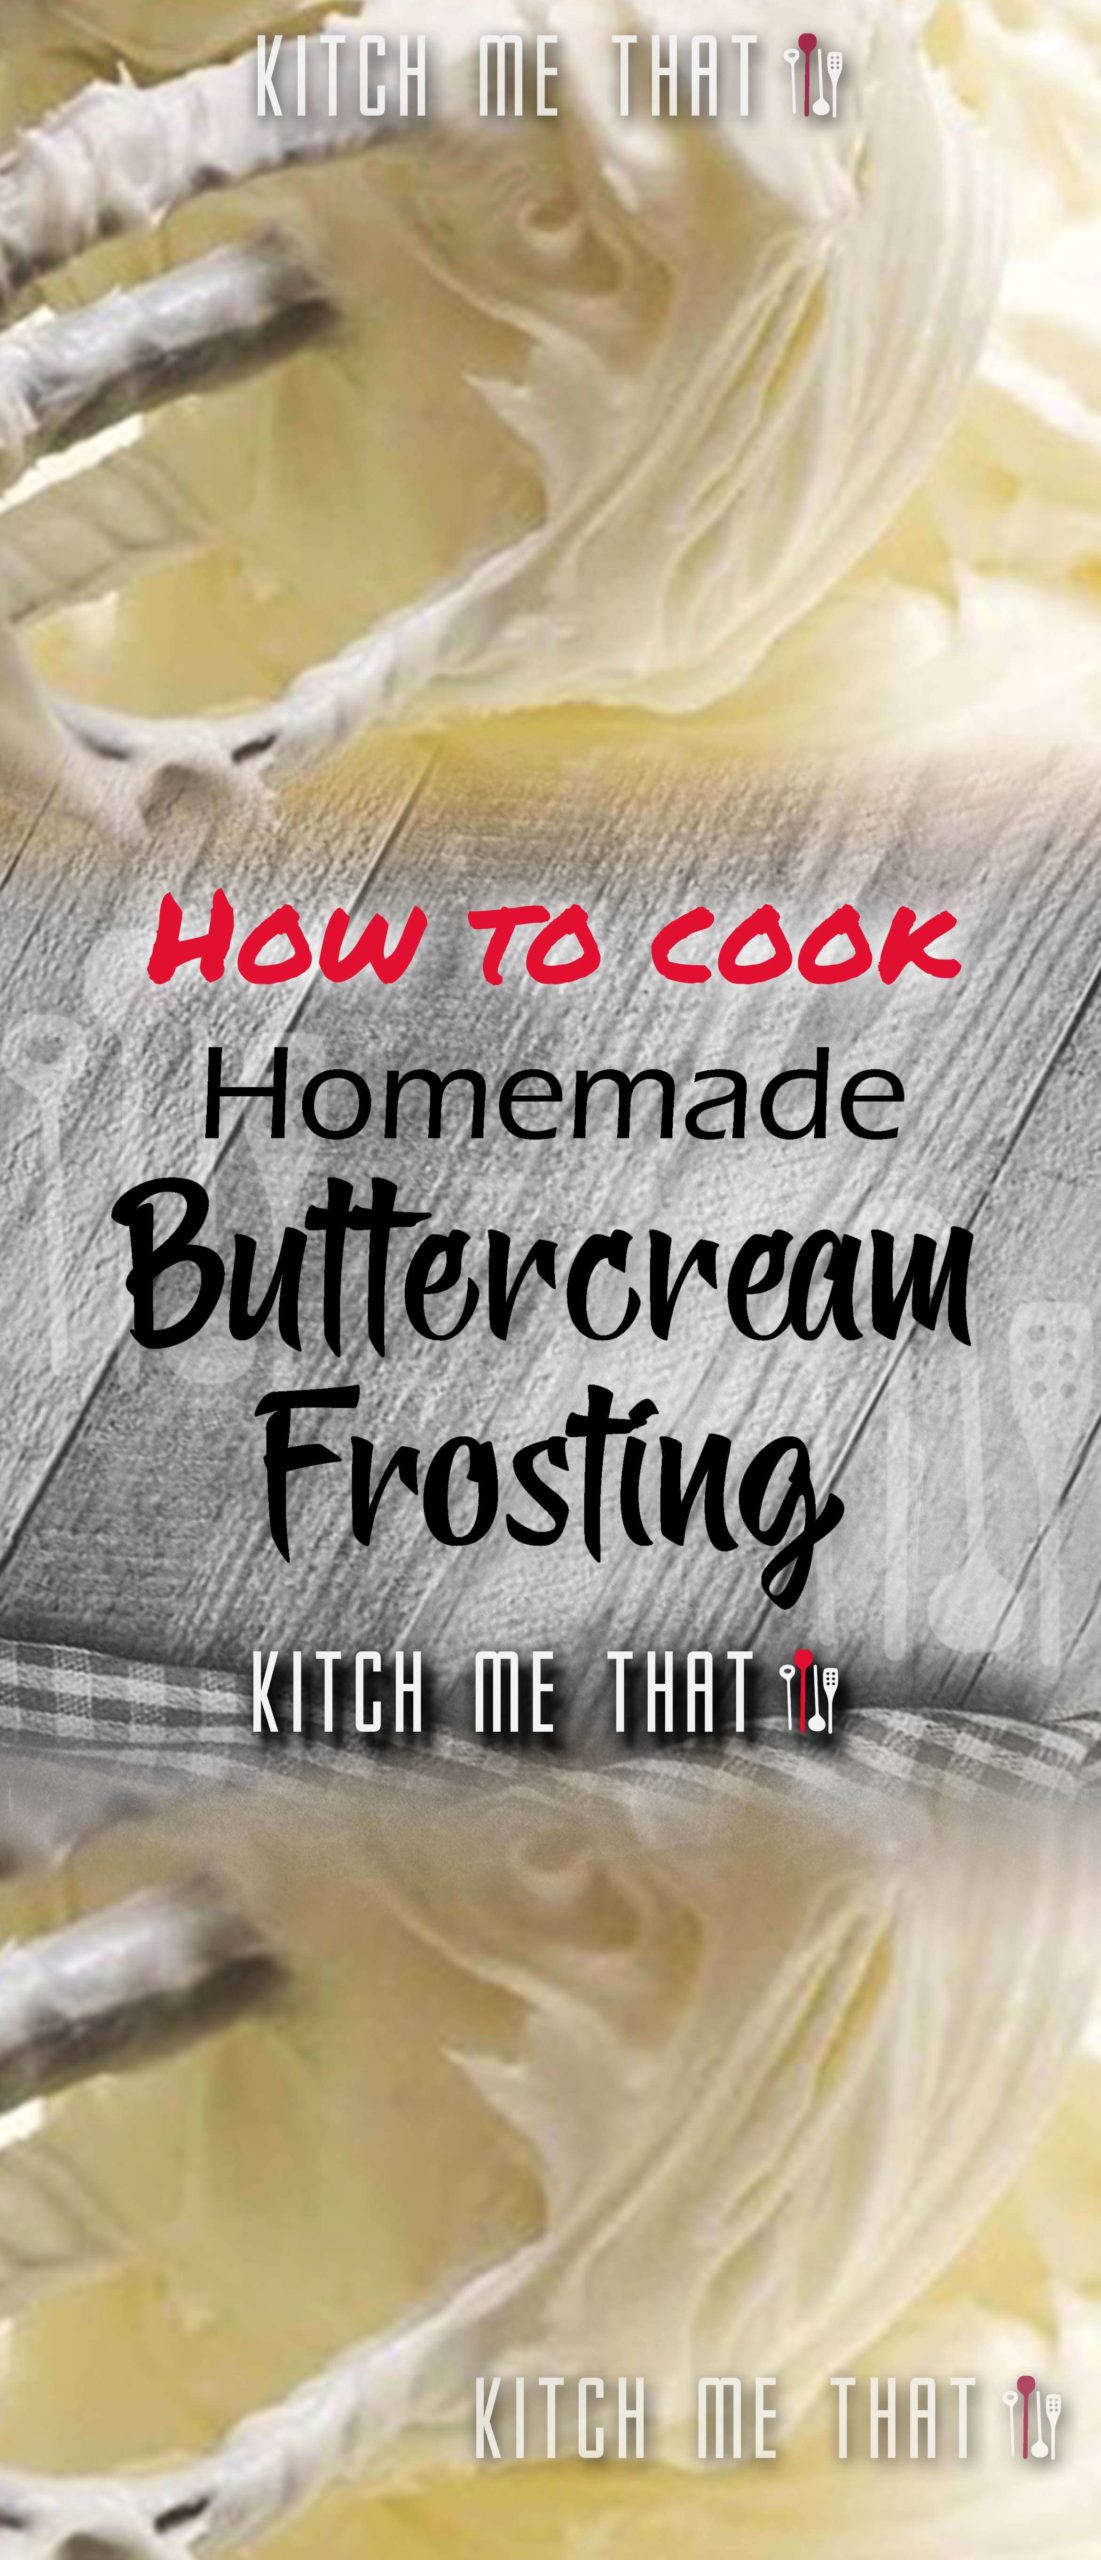 Homemade Buttercream Frosting